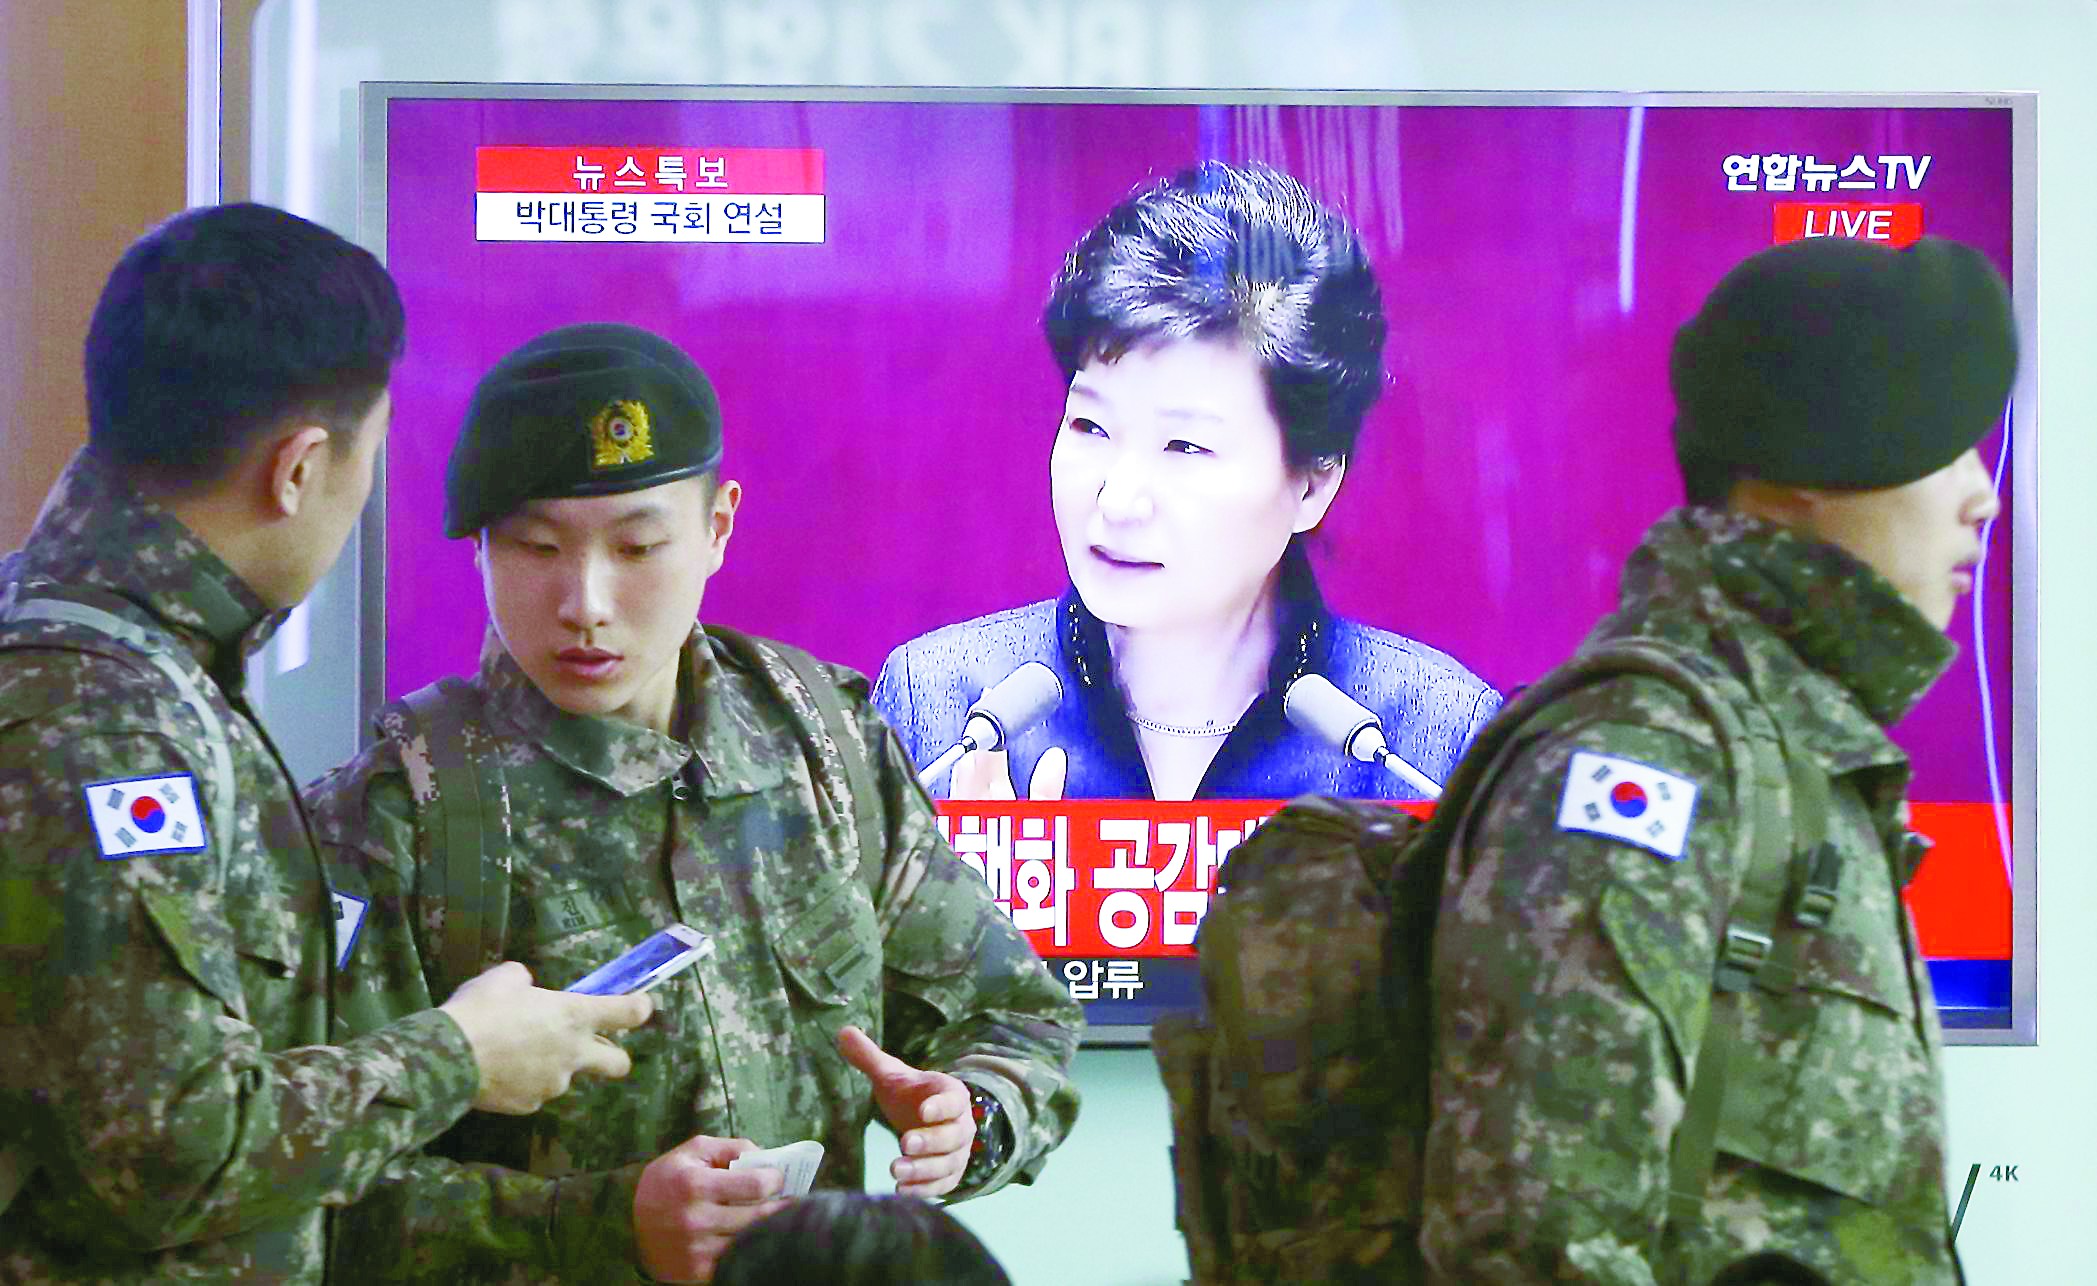 朴槿惠言辞激烈抨击朝鲜 警告半岛局势面临破局